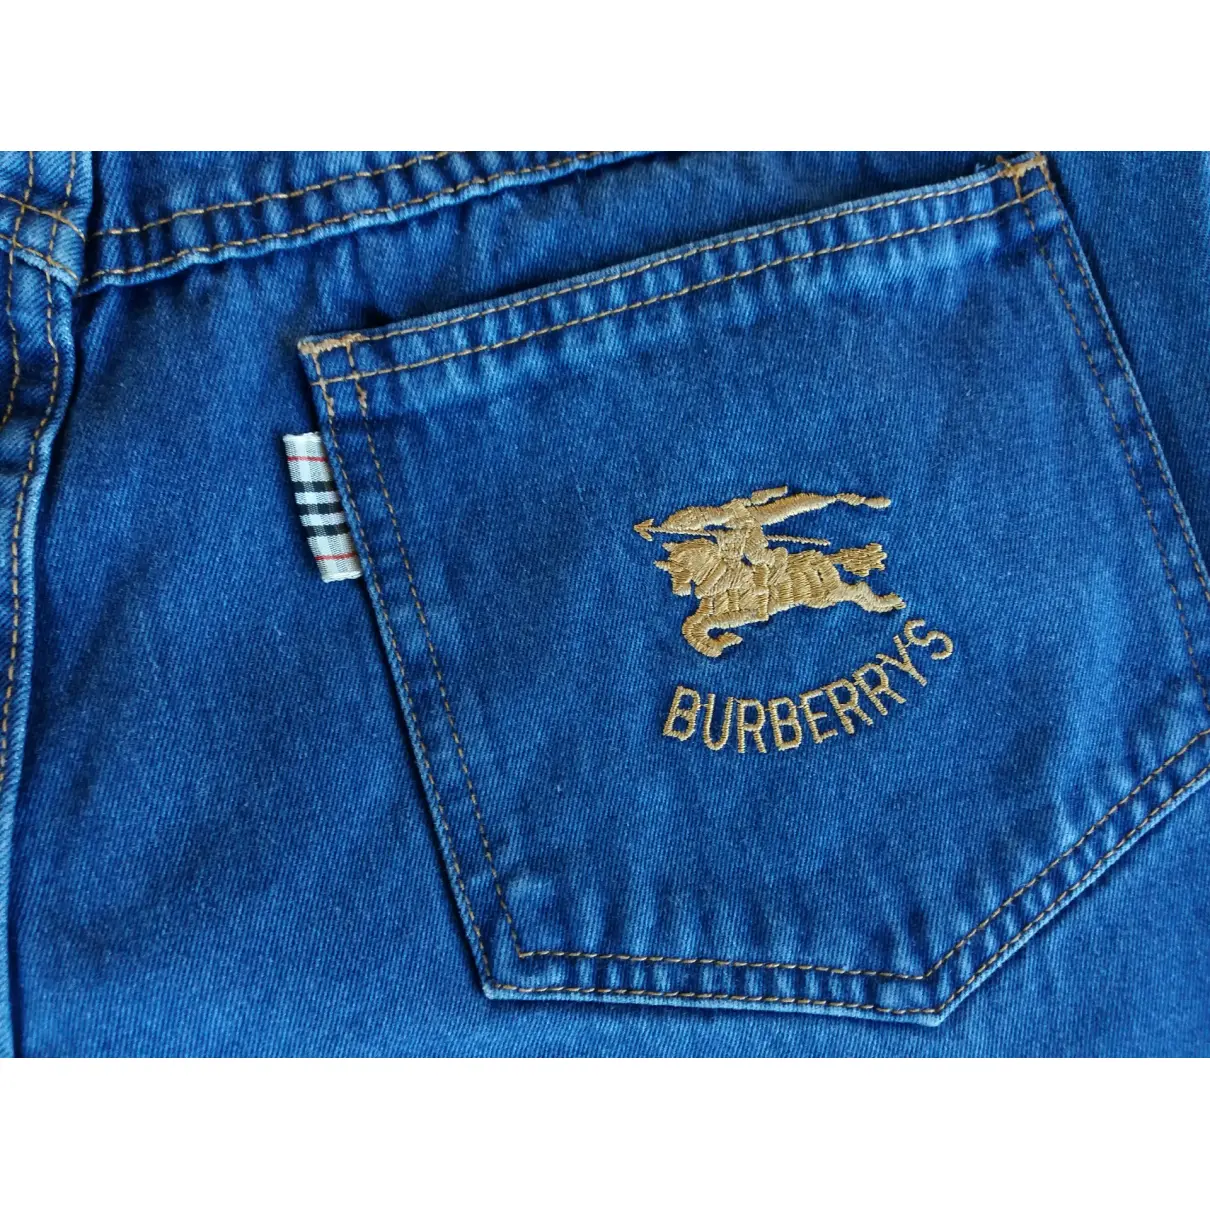 Blue Cotton Jeans Burberry - Vintage